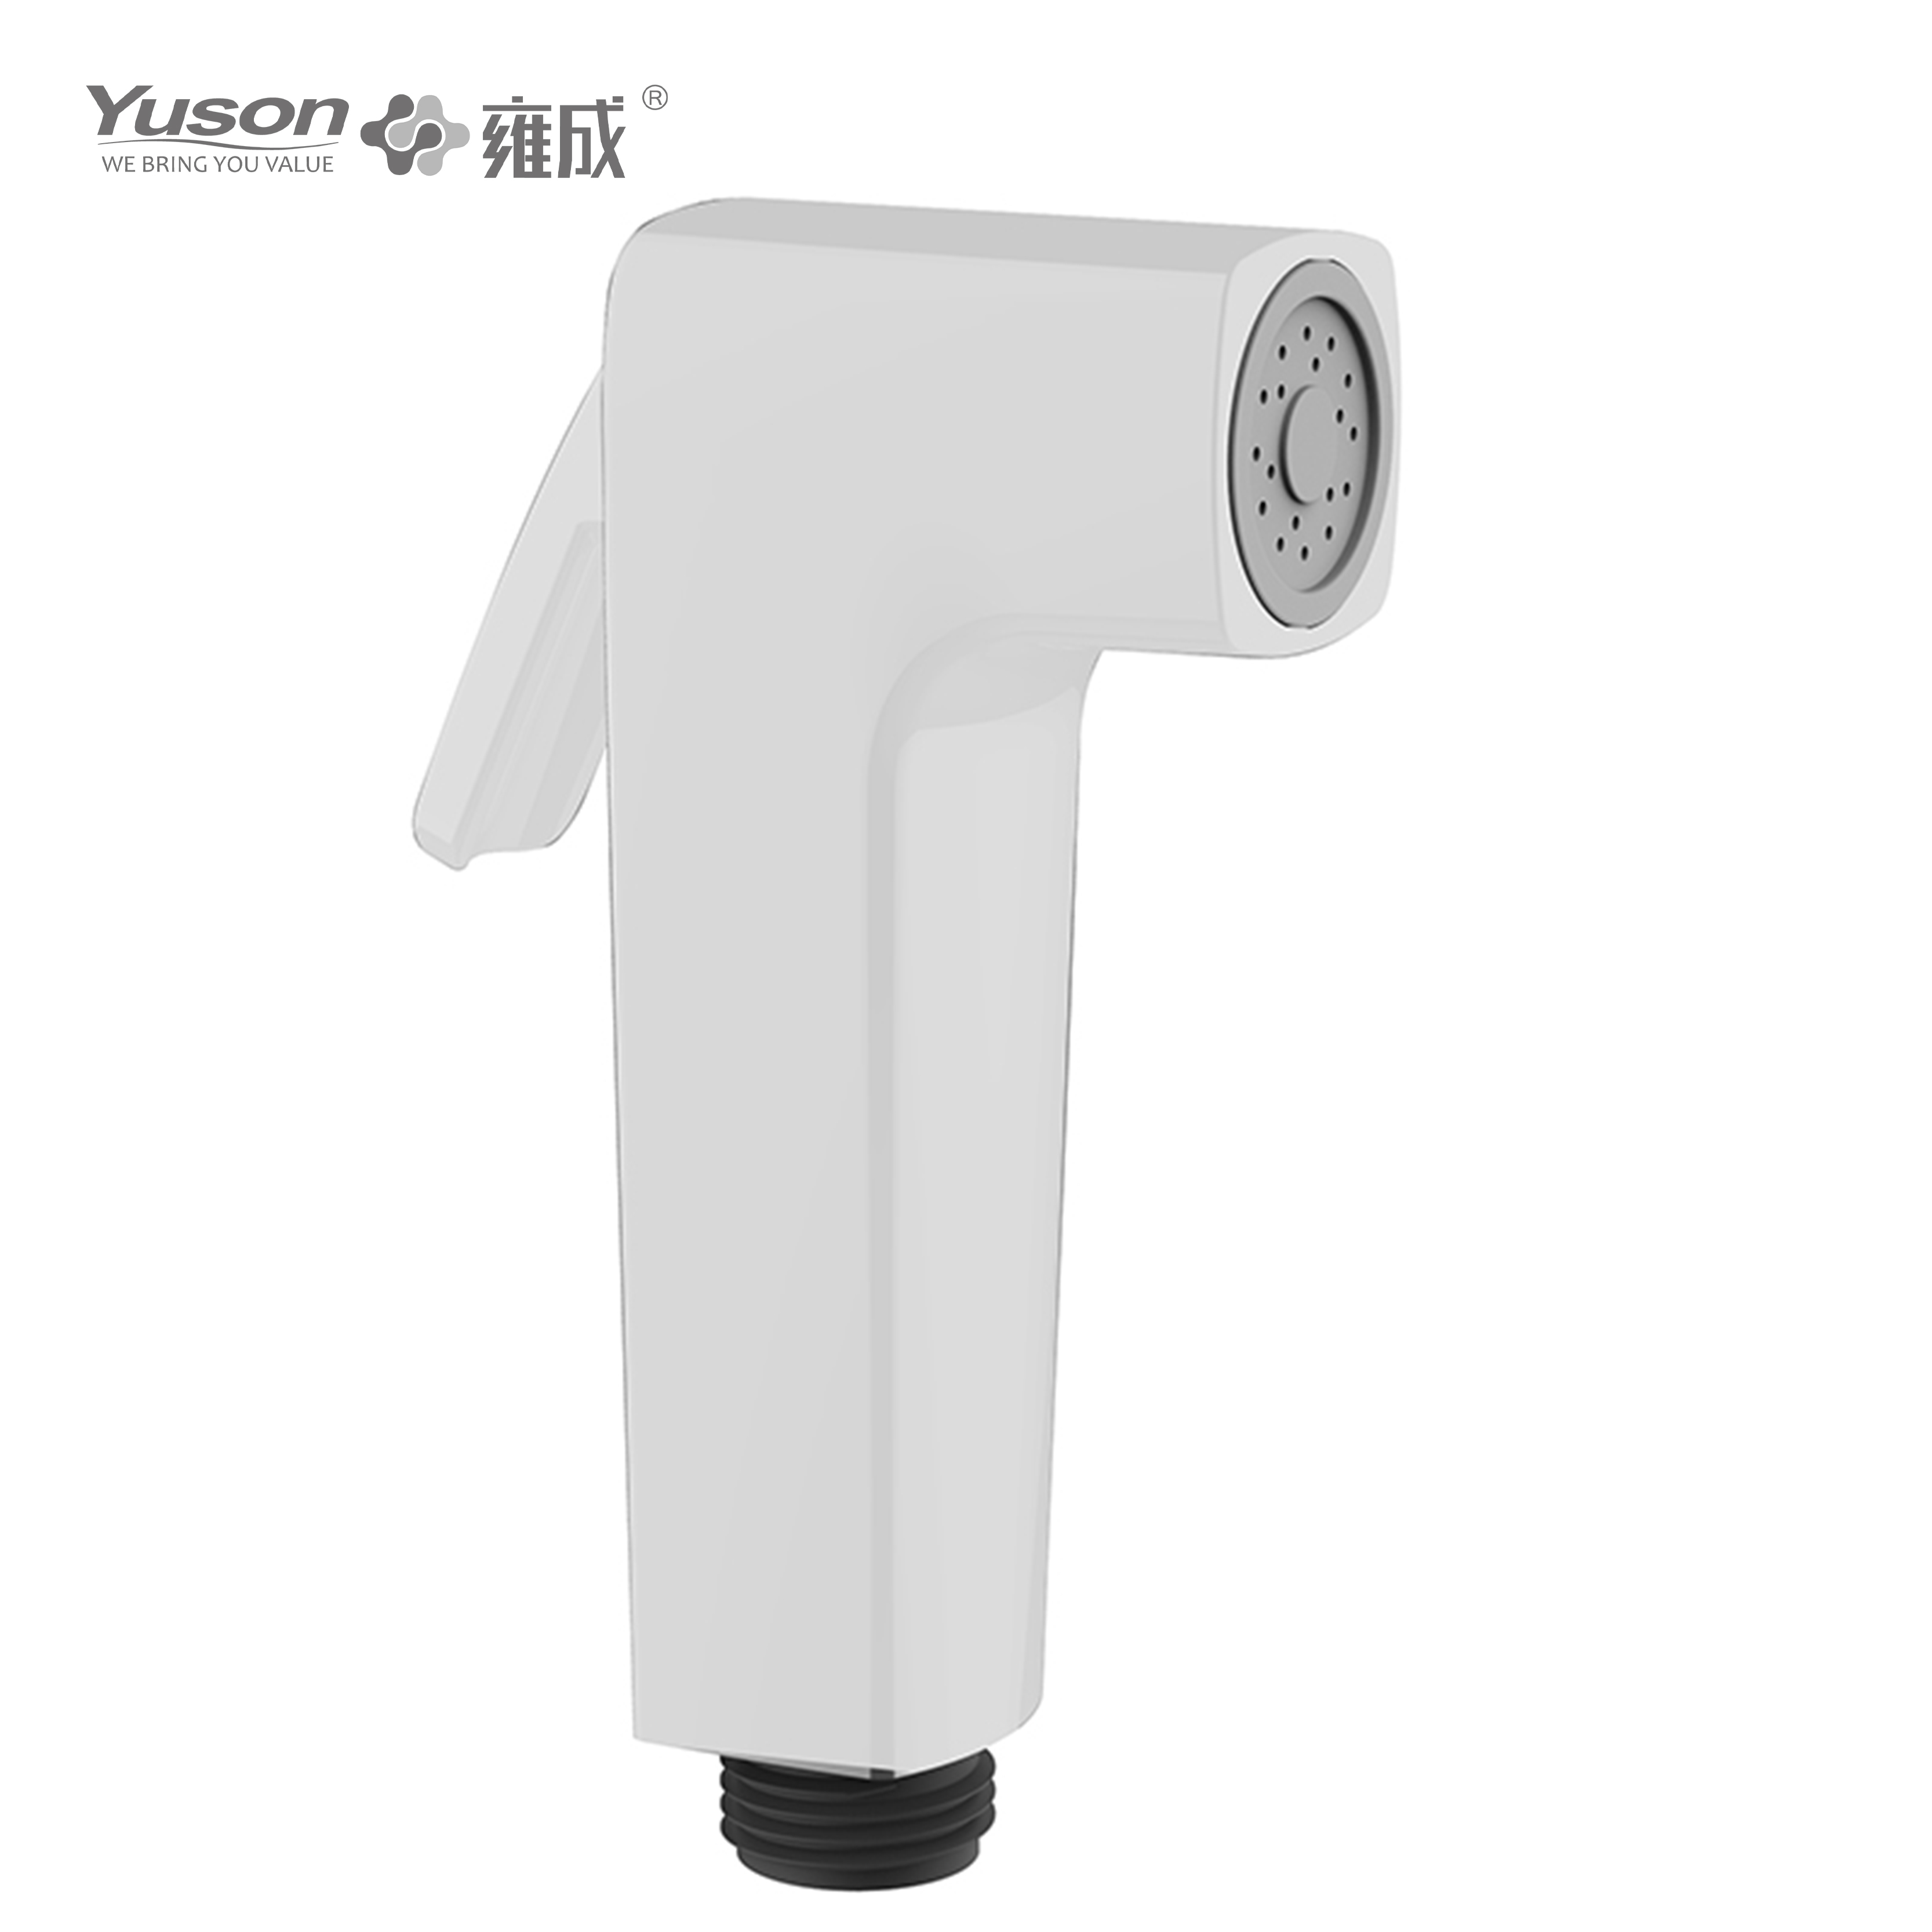 YS36076	ABS shataff, bidet attachment bidet toilet attachment